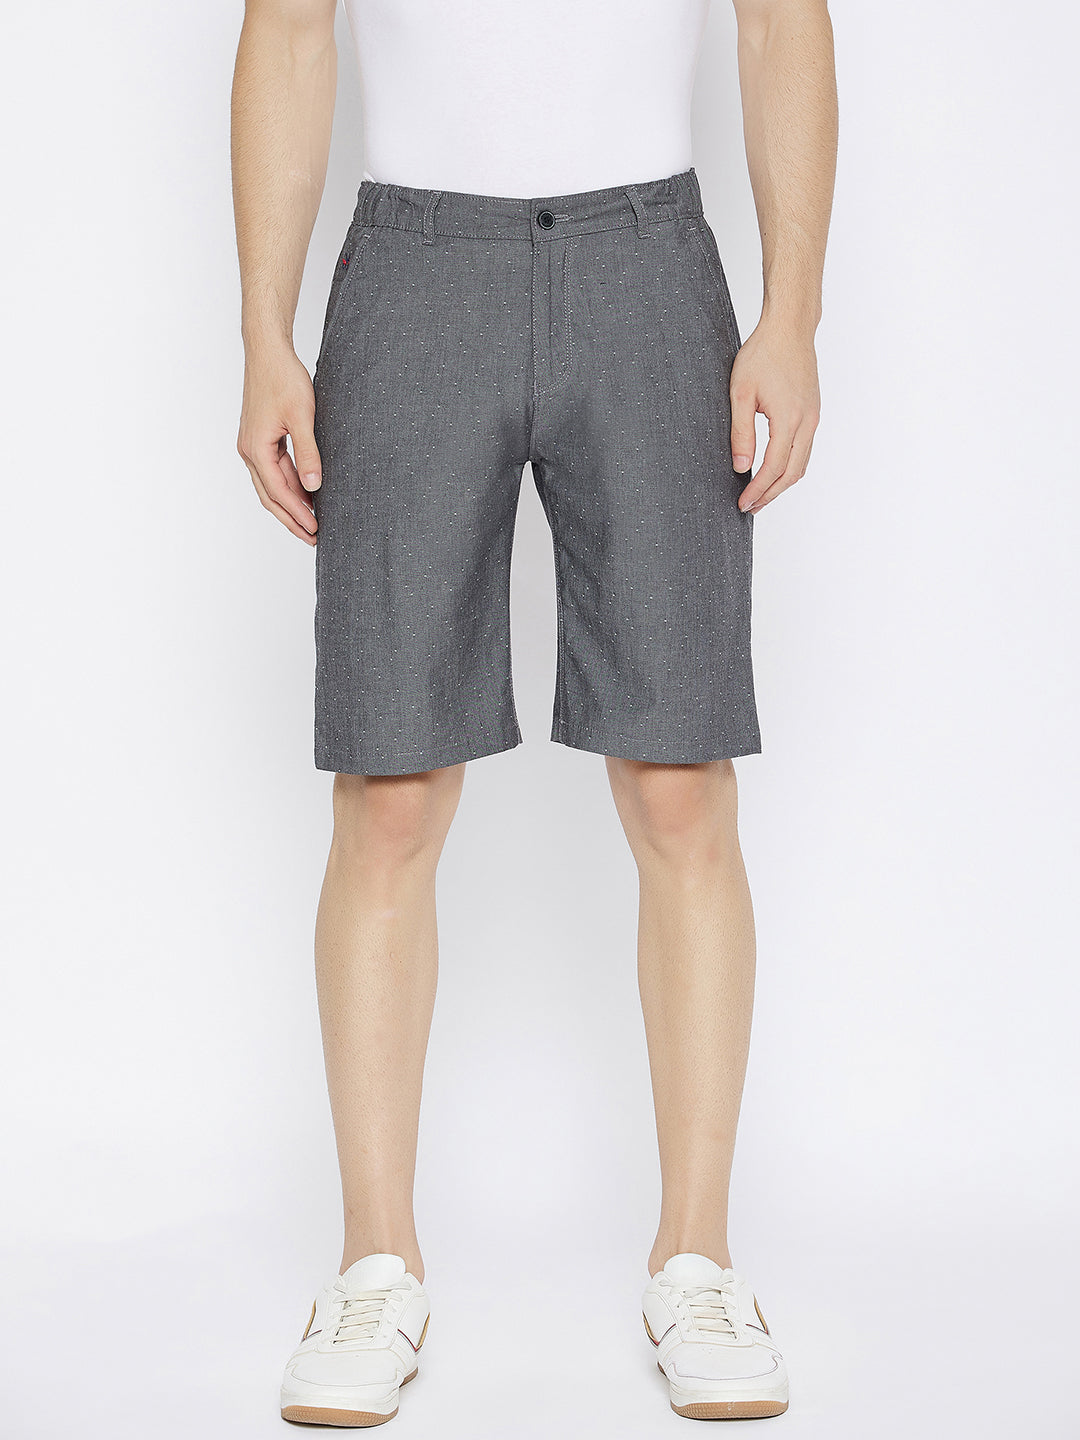 Charcoal Printed Slim Fit Shorts - Men Shorts